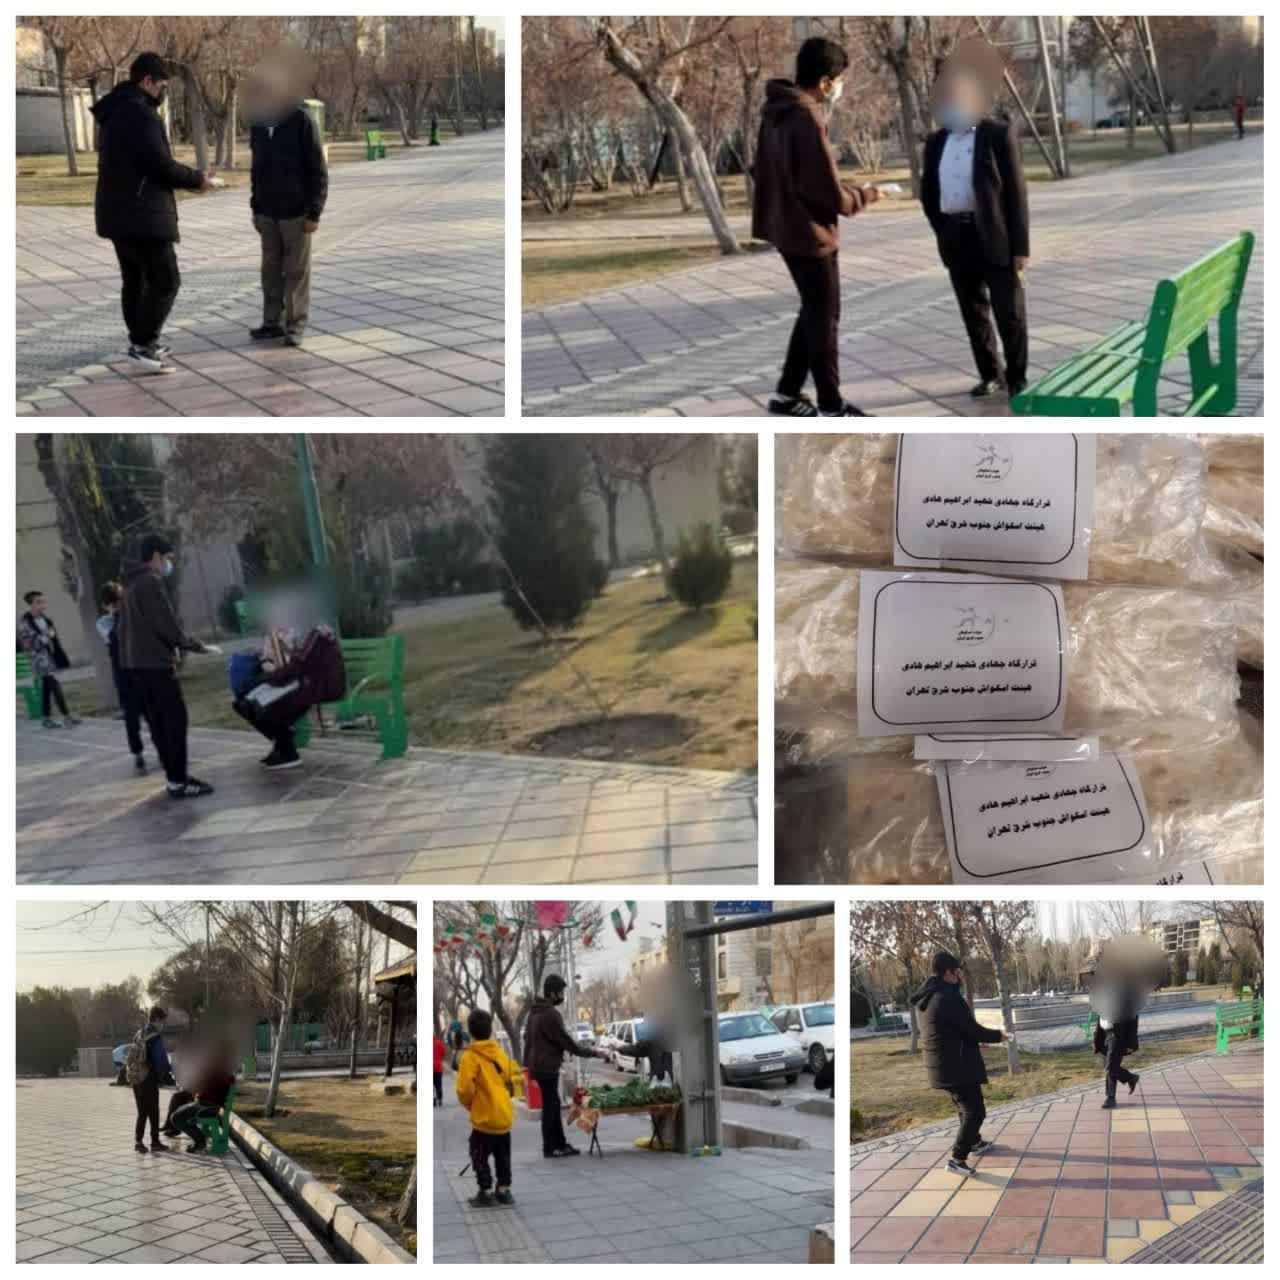 اهدای لقمه های کریمانه به شهروندان به مناسبت وفات حضرت زینب توسط هیئت اسکواش جنوب شرق تهران